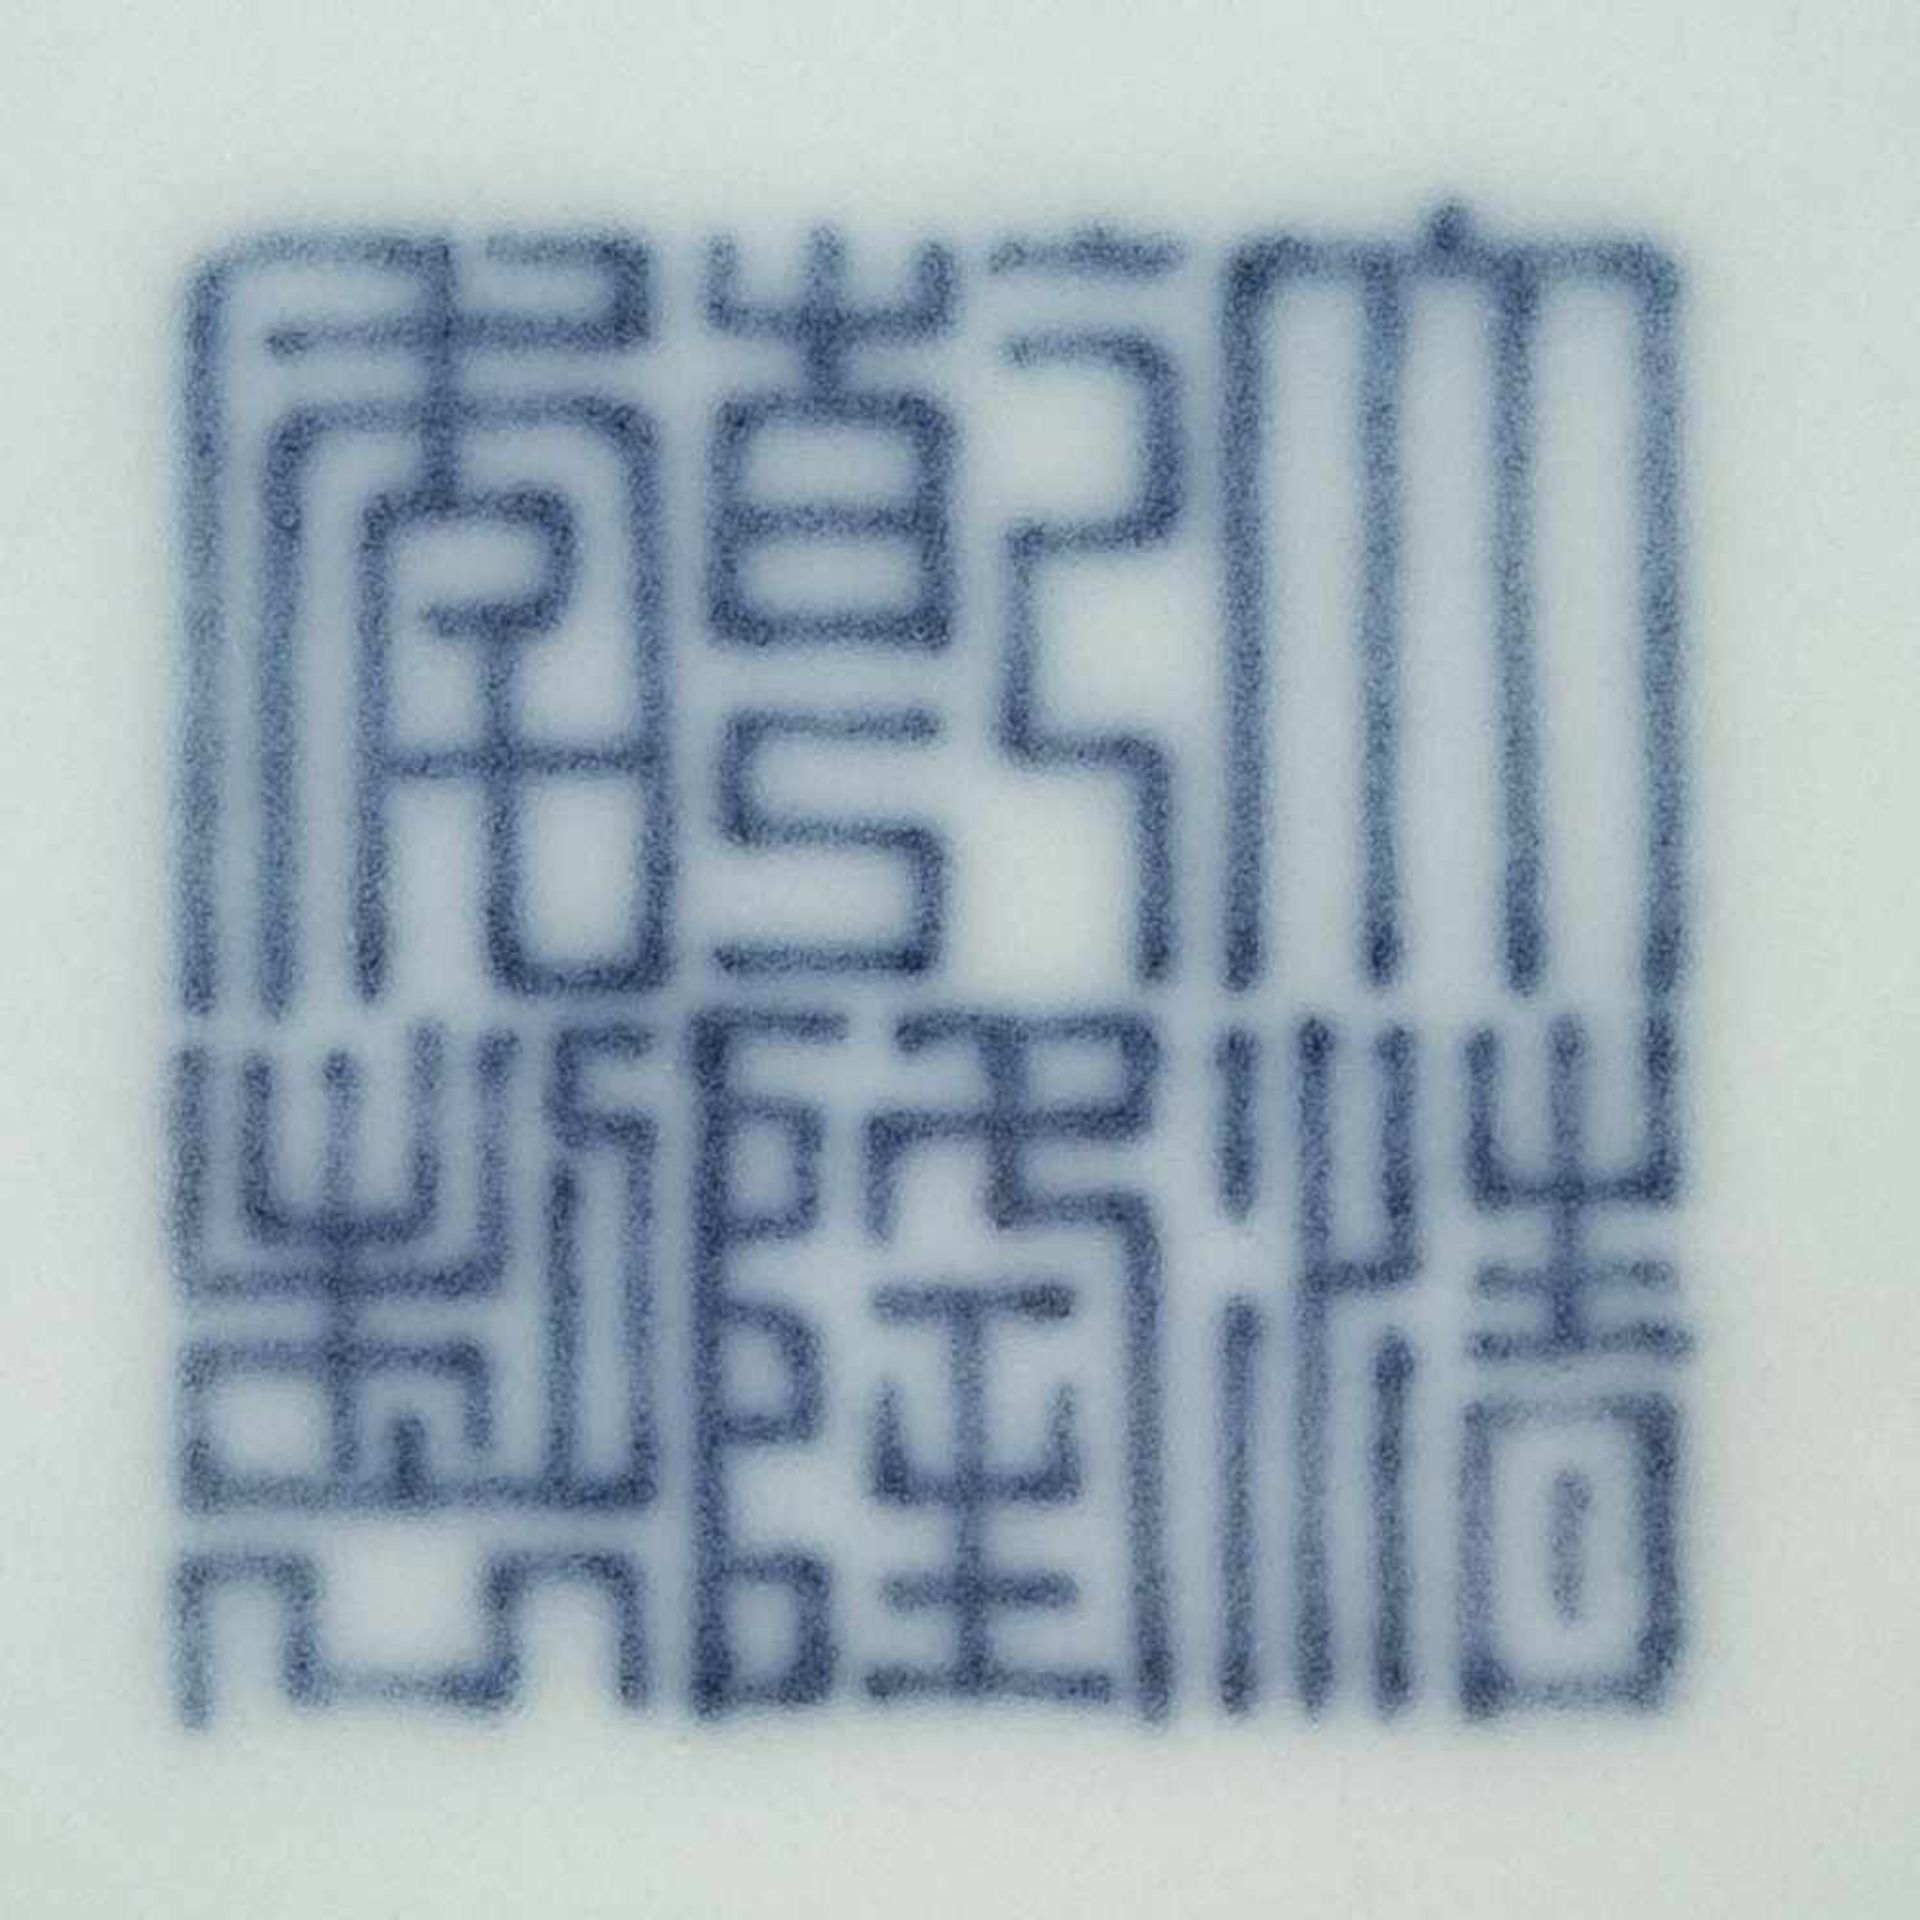 GROßE ROTE SCHALE China, 18./19. Jh. Porzellan, Ochsenblutglasur. H. 9 cm, D. 19,5 cm. Im Boden - Bild 2 aus 2